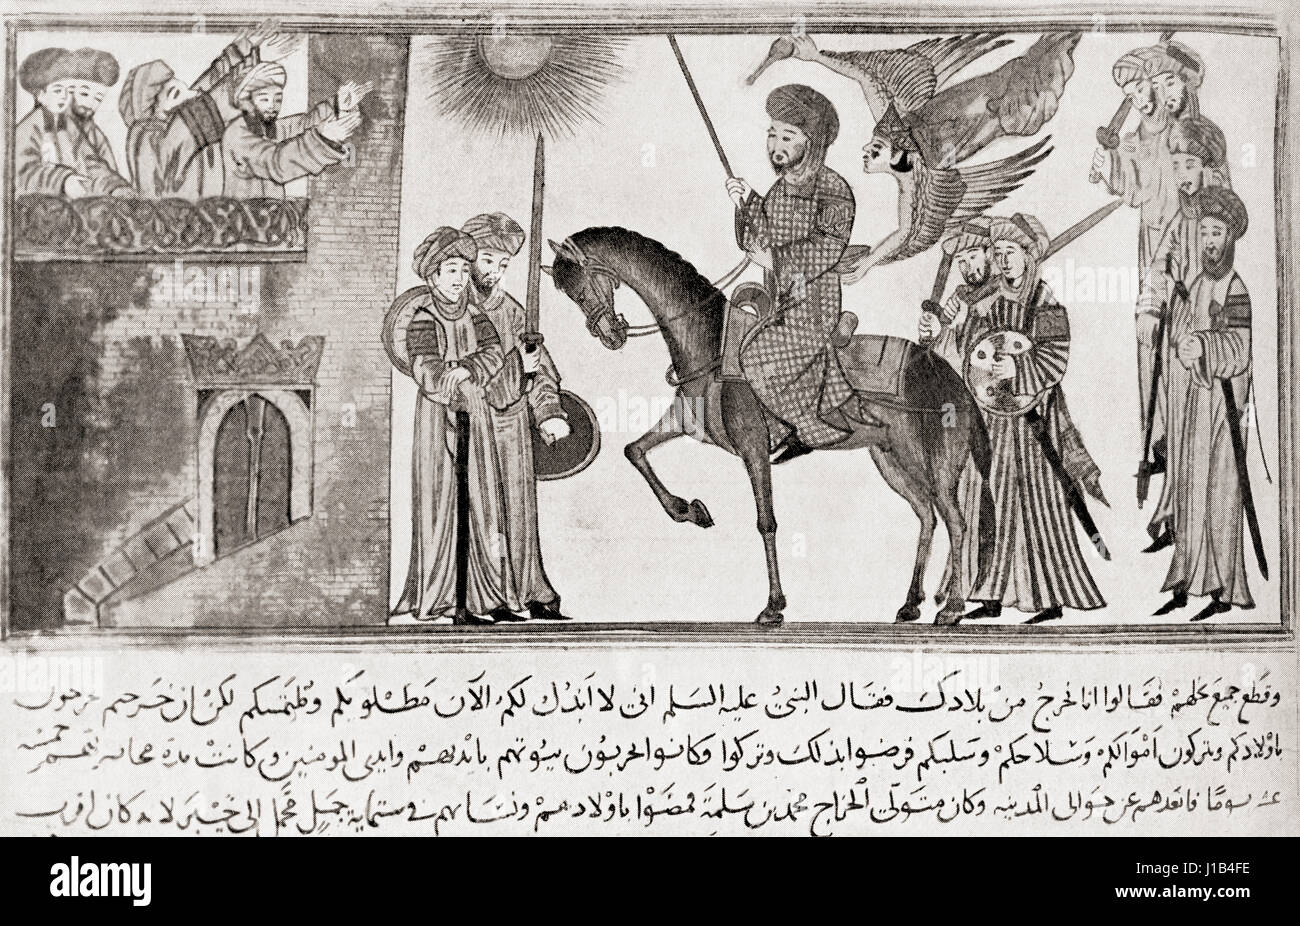 Muḥammad ibn 'Abdullāh, ch. 570 - 632. Prophète de l'Islam. L'histoire de Hutchinson de l'ONU, publié 1915 Banque D'Images